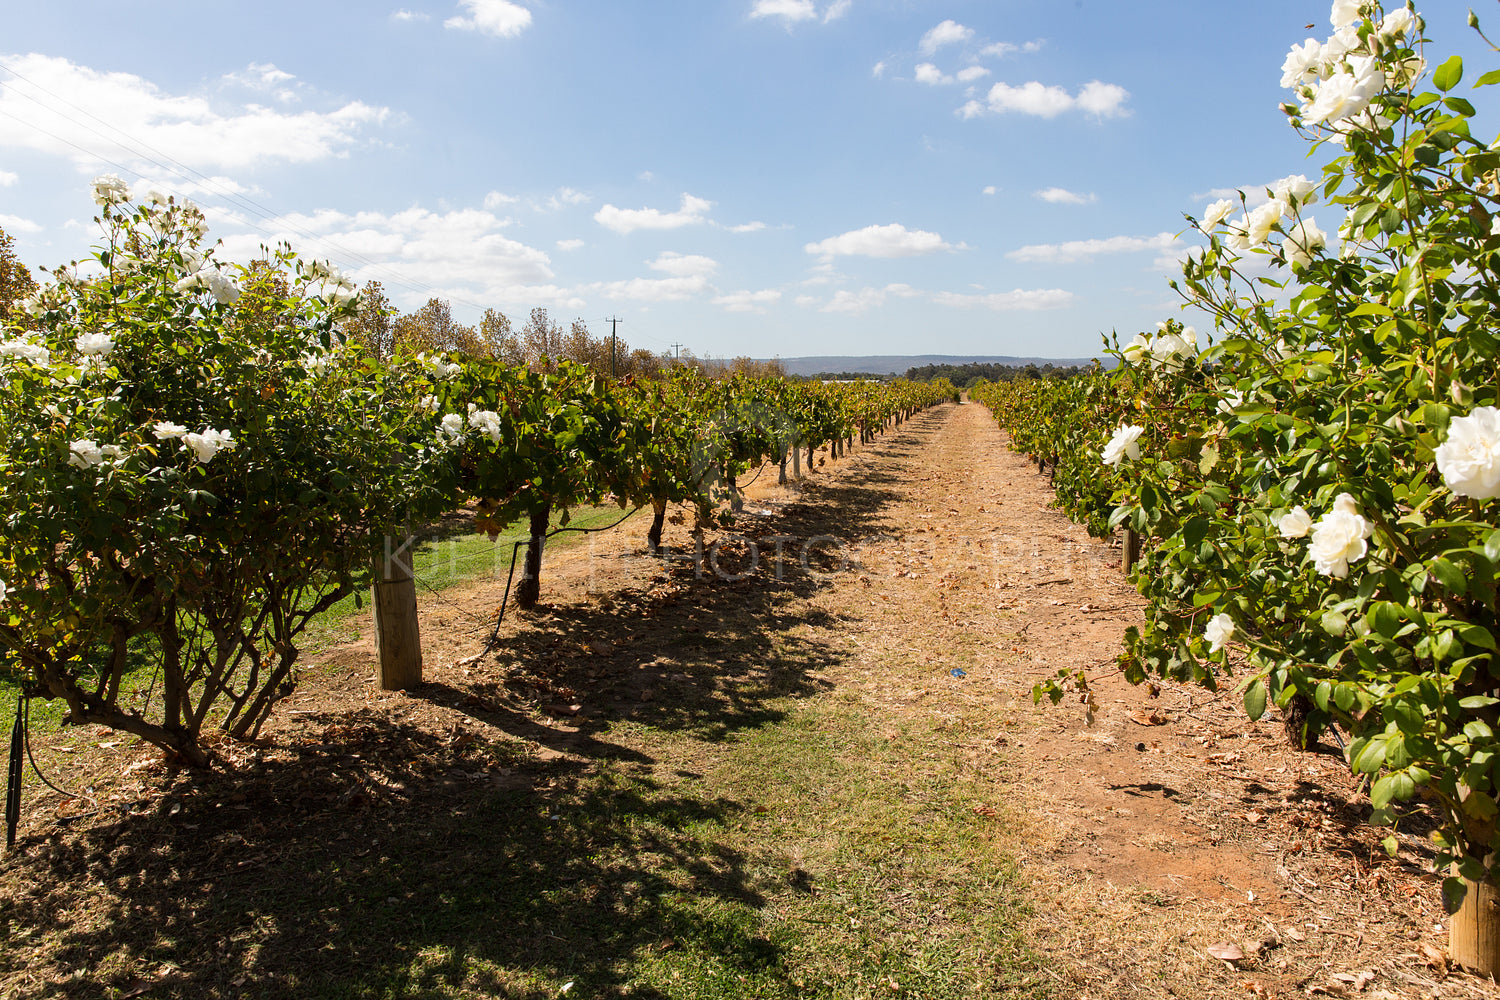 Vineyard in western australia